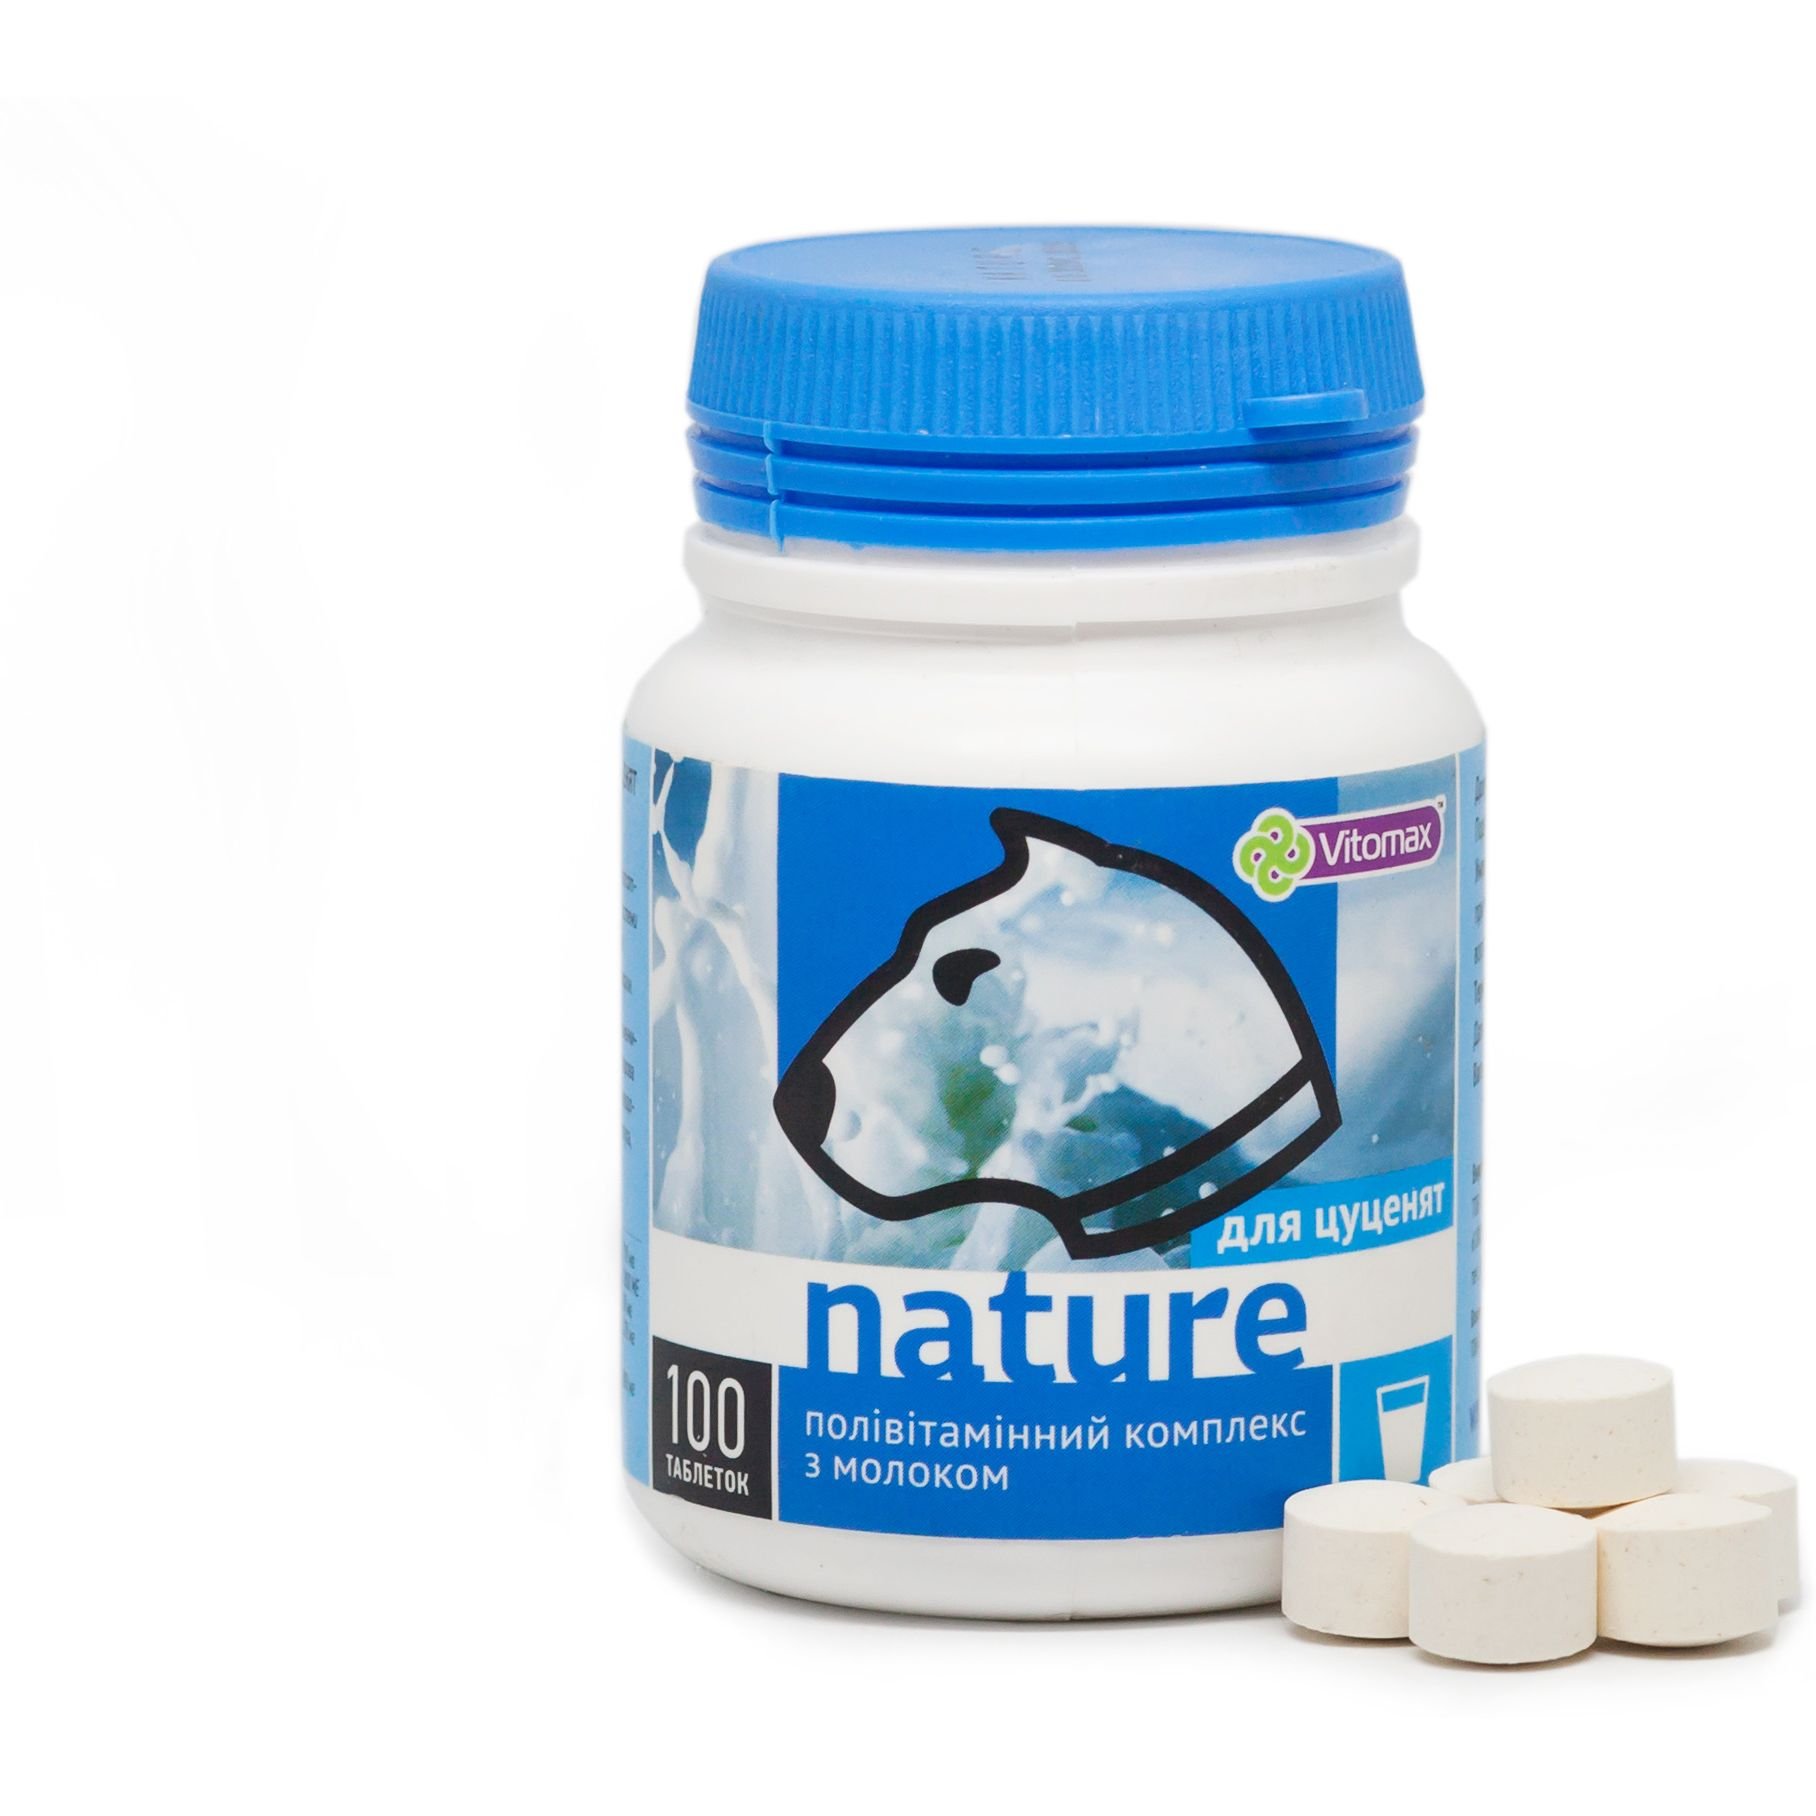 Поливитаминный комплекс Vitomax Nature для щенков с молоком, 100 таблеток - фото 2